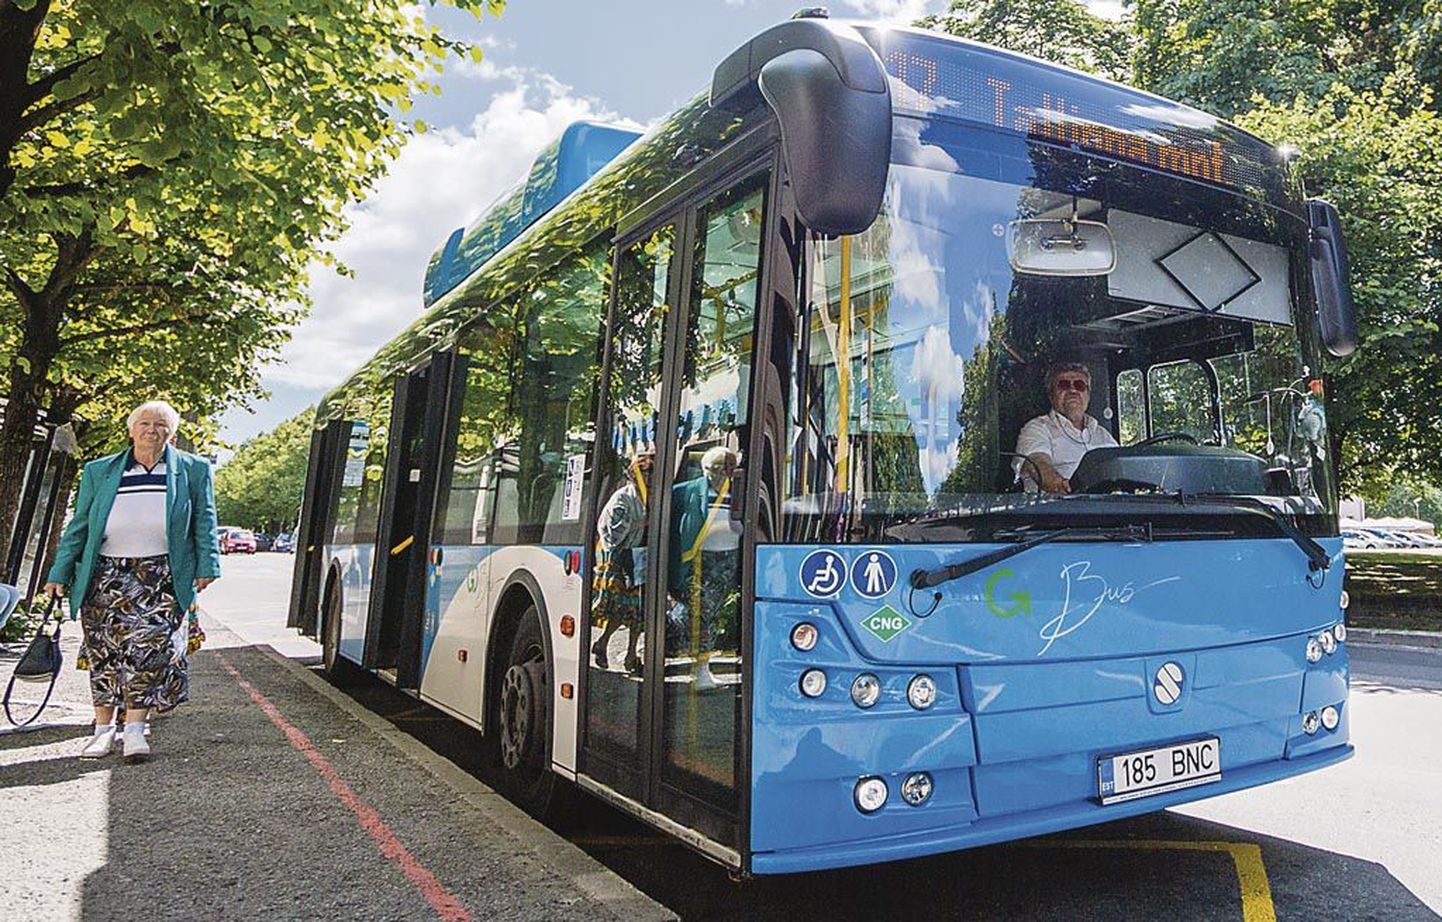 Praegu teenindavad Pärnus linnaliine kolme uksega GoBusi bussid. Leping ettevõttega lõppeb juba selle aasta 31. detsembril.